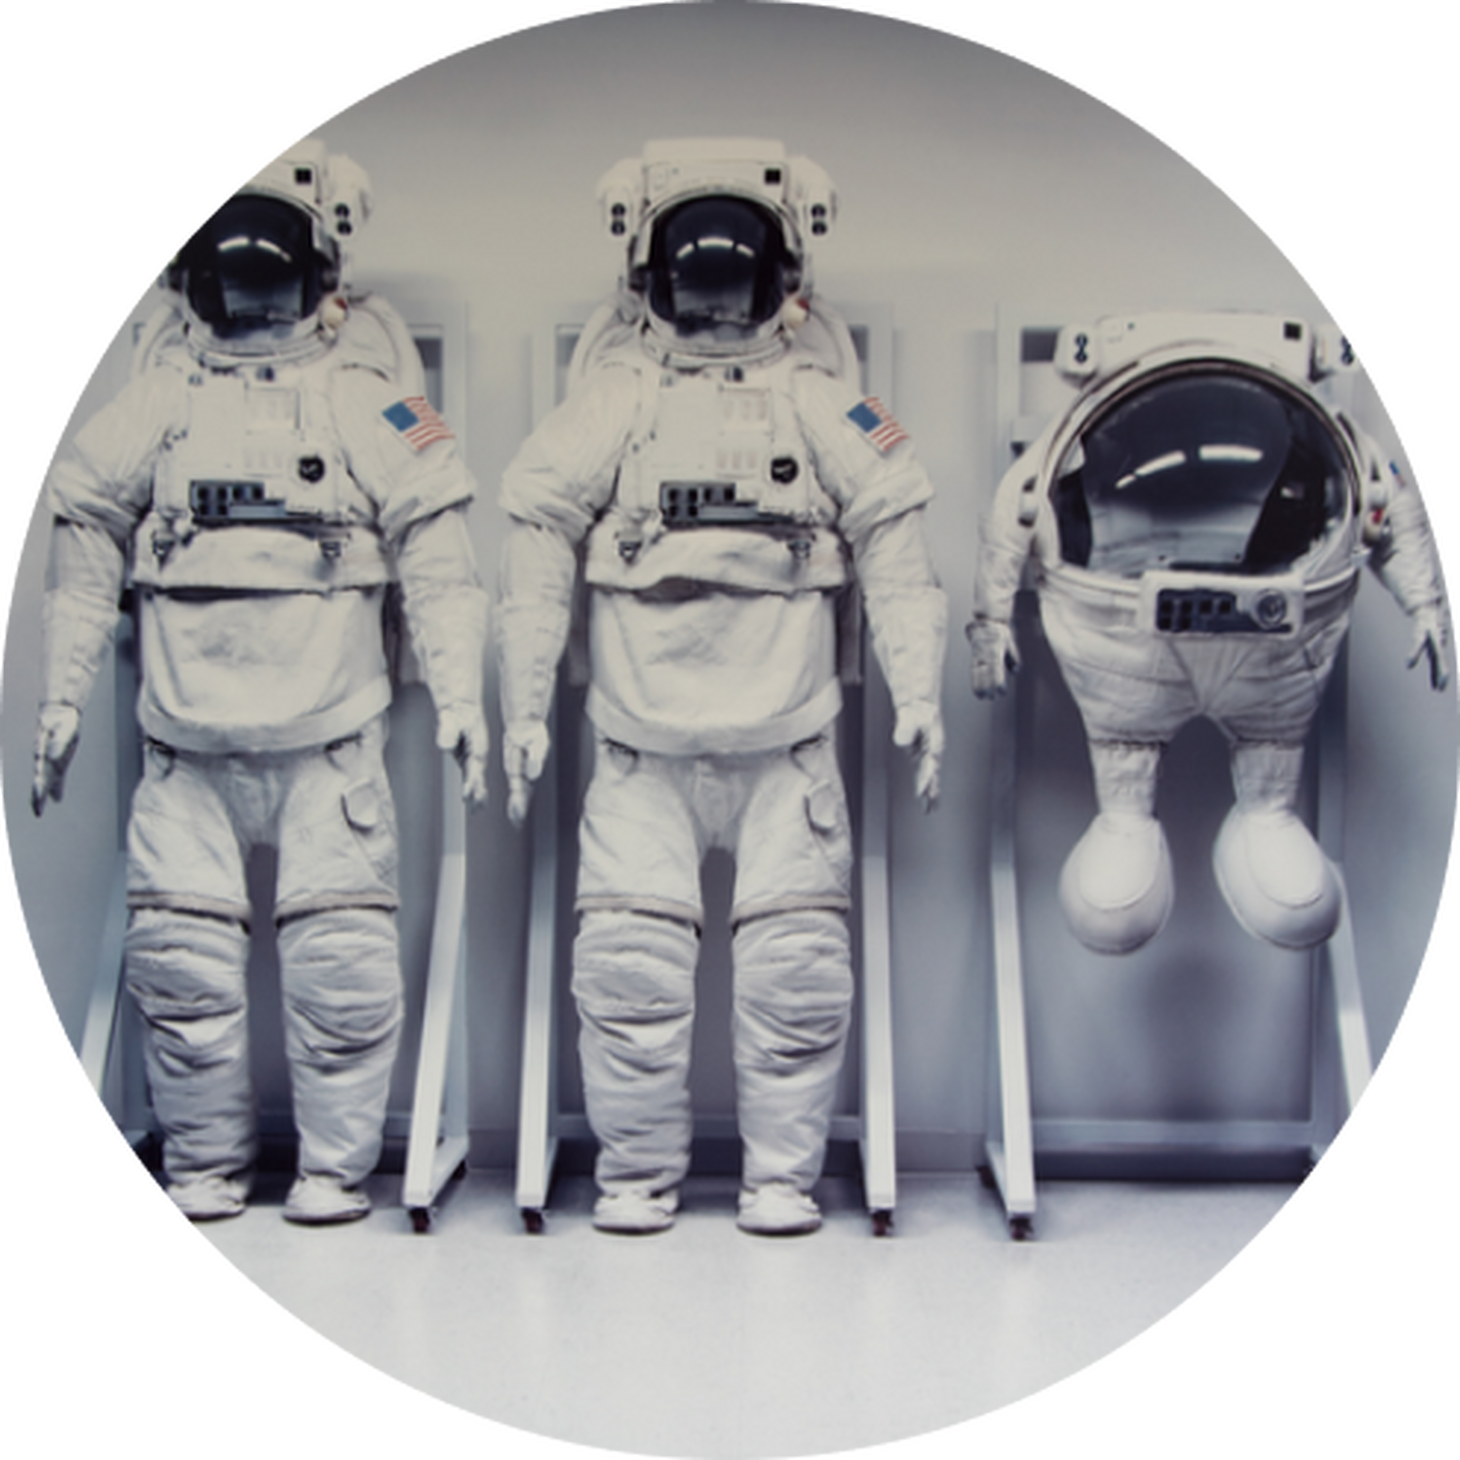 M&M Astronaut Suits